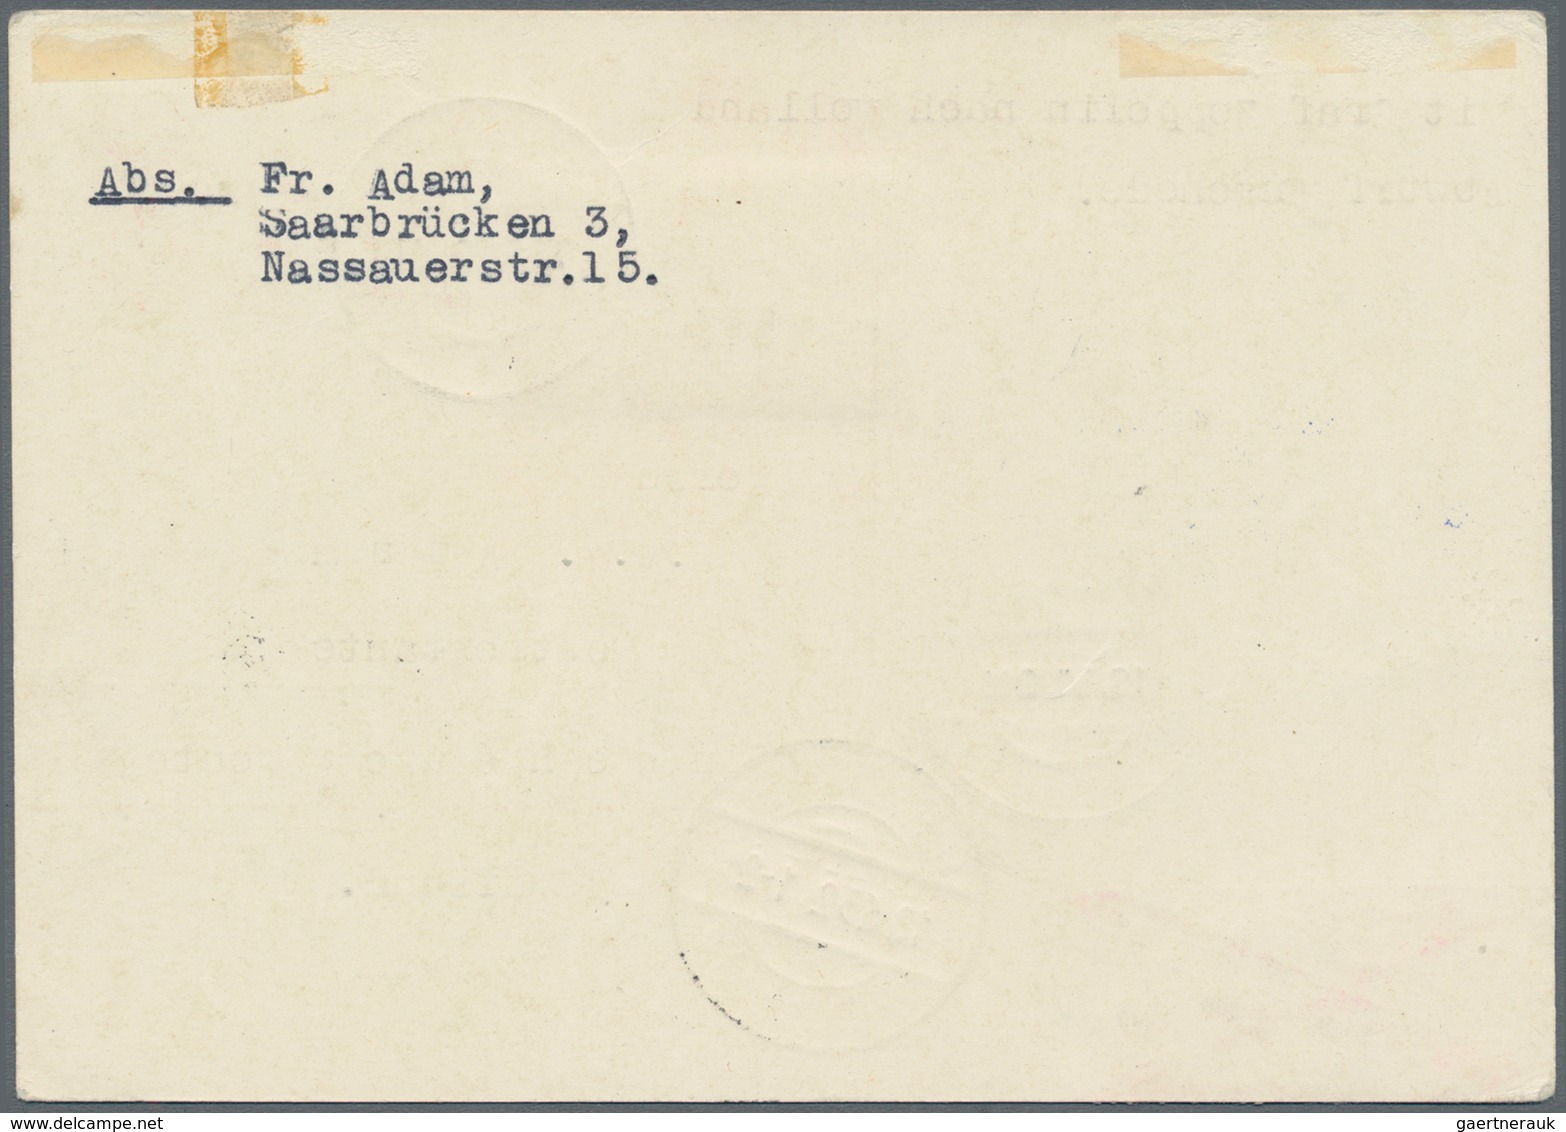 Zeppelinpost Deutschland: 1932. Saar/German Upfranked Ganzsache / Postal Stationery Card Flown On Th - Luchtpost & Zeppelin